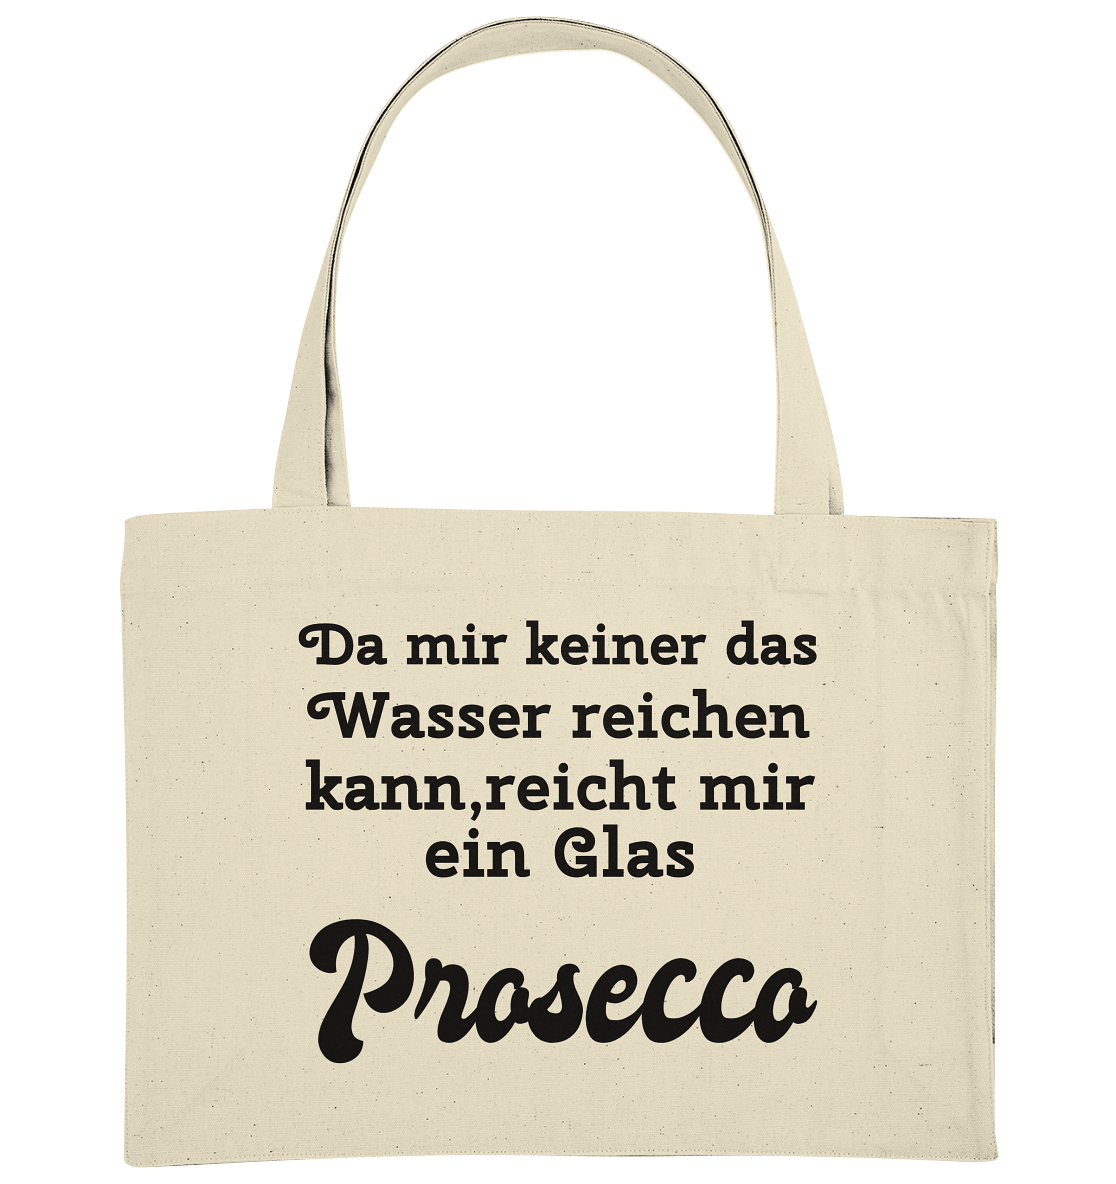 Da mir keiner das Wasser reichen kann, reicht mir ein Glas Prosecco -Designe Munich Palms  - Organic Shopping-Bag